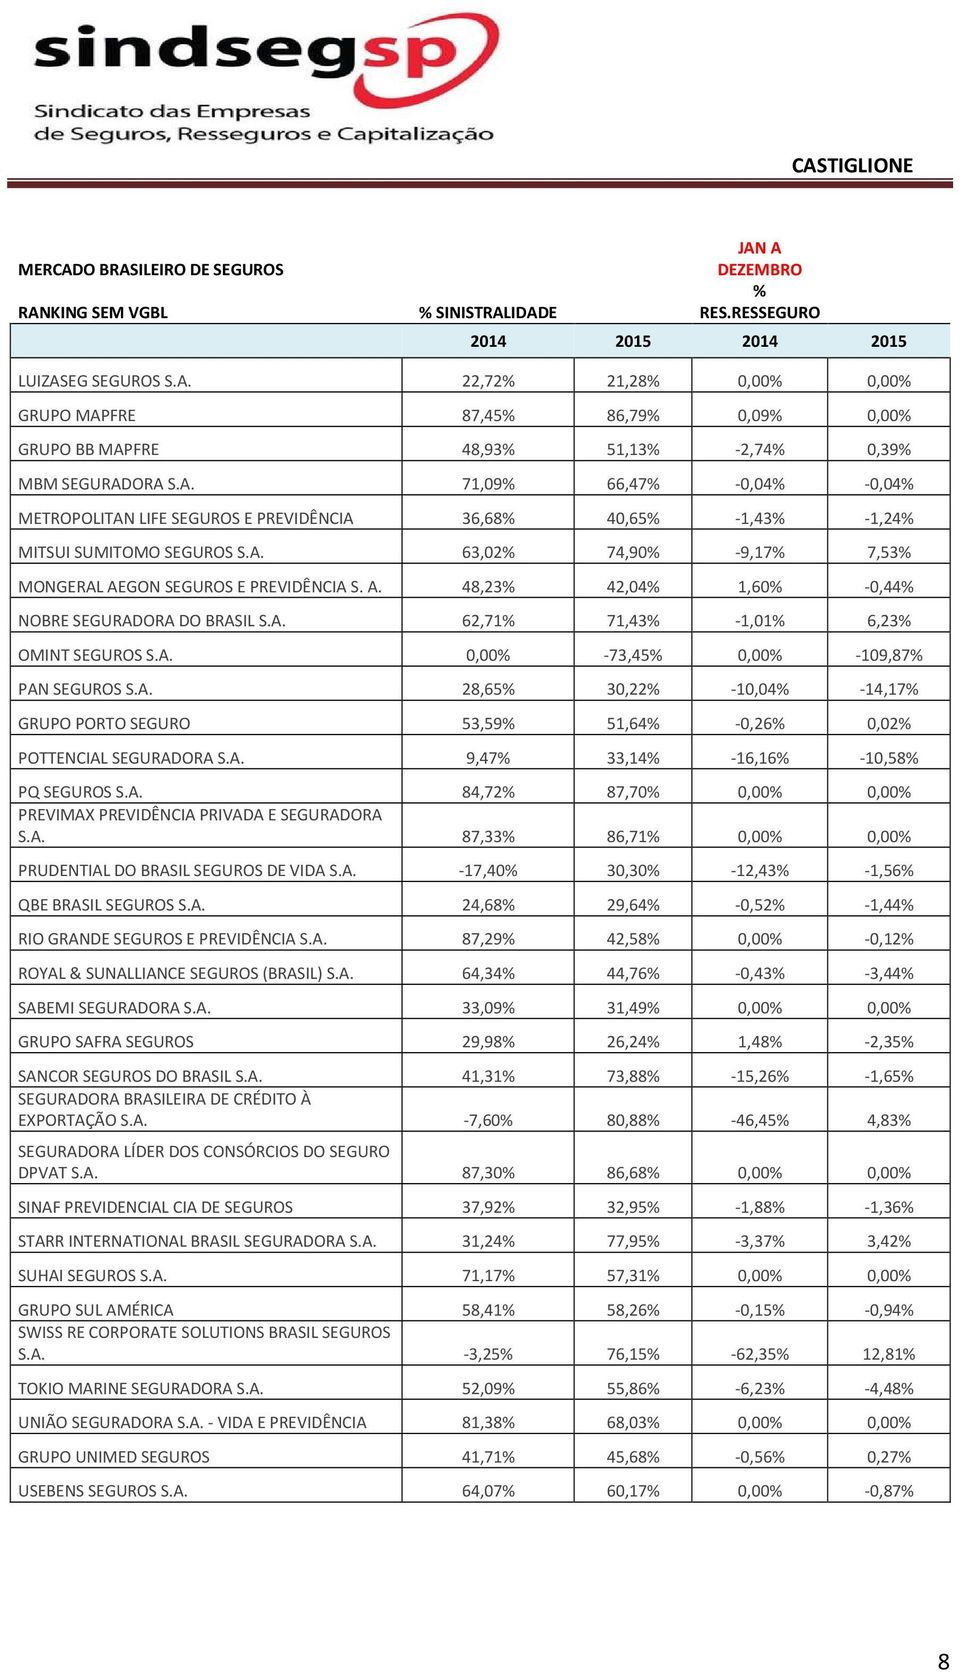 GON SEGUROS E PREVIDÊNCIA S. A. 48,23% 42,04% 1,60% -0,44% NOBRE SEGURADORA DO BRASIL S.A. 62,71% 71,43% -1,01% 6,23% OMINT SEGUROS S.A. 0,00% -73,45% 0,00% -109,87% PAN SEGUROS S.A. 28,65% 30,22% -10,04% -14,17% GRUPO PORTO SEGURO 53,59% 51,64% -0,26% 0,02% POTTENCIAL SEGURADORA S.